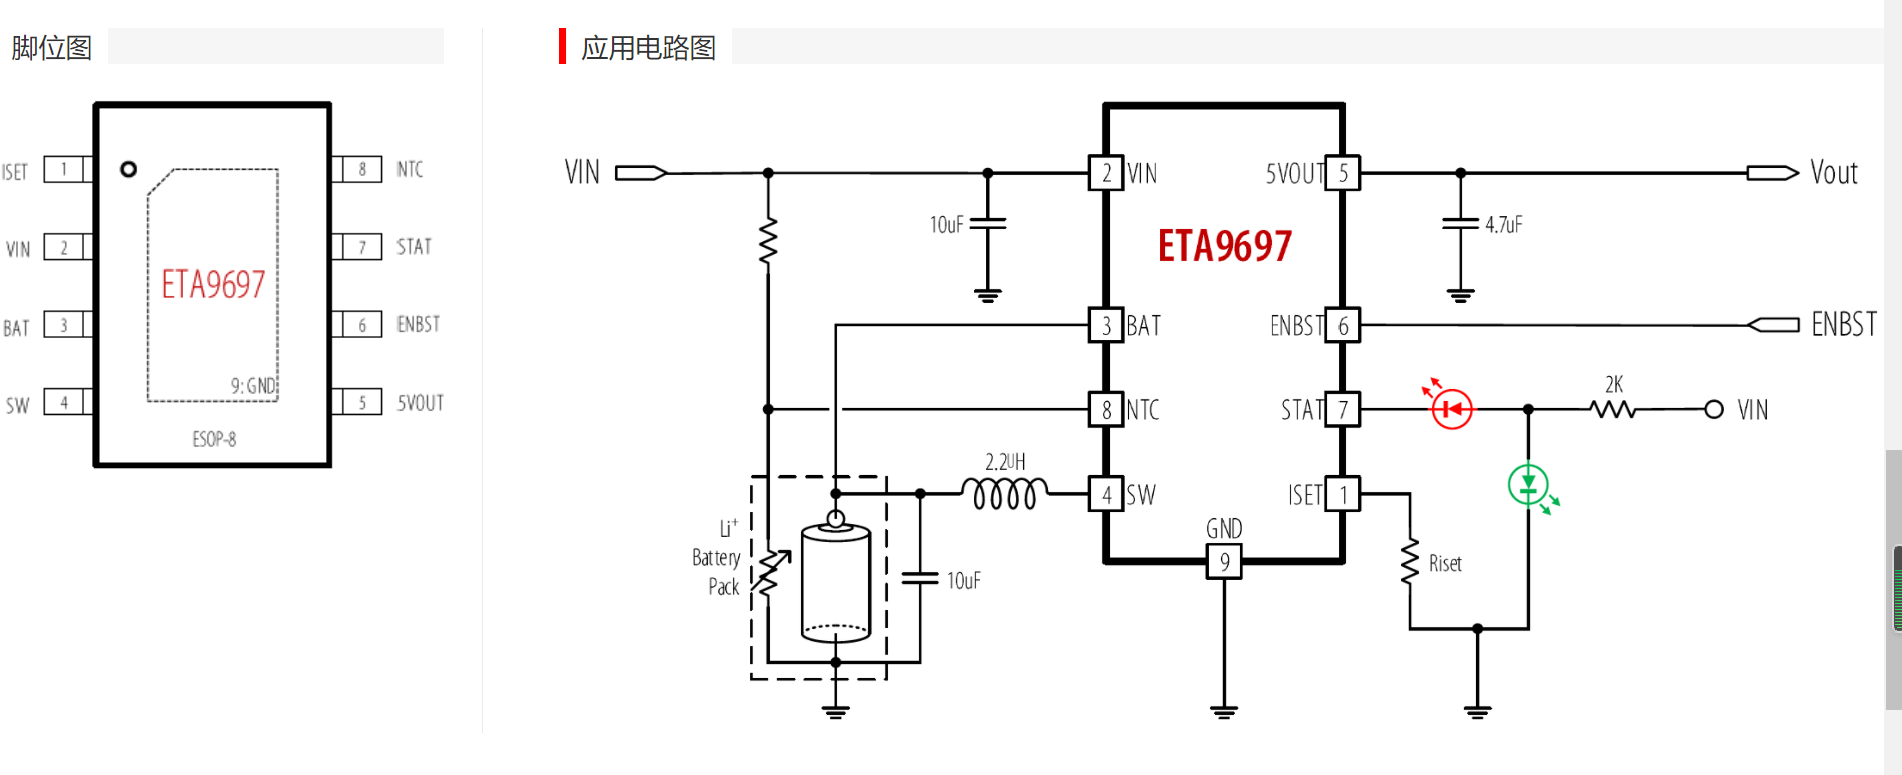 ETA9697，5V-0.4A二合一蓝牙充电仓充放电芯片，带EN使能，可用于蓝牙充电仓